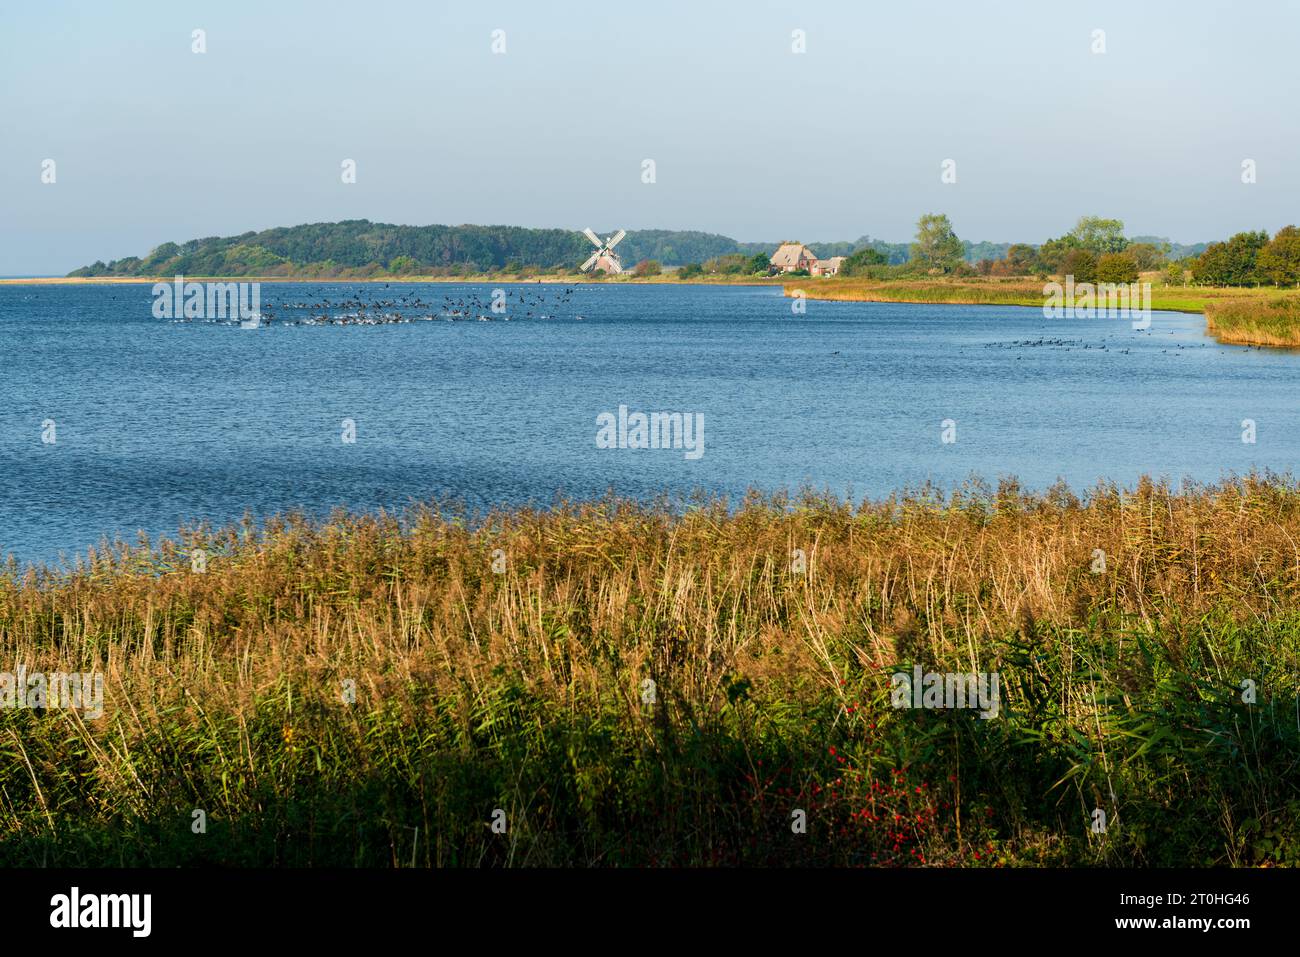 Landschaft an der Schlei im Herbst, Gänse auf dem Wasser, eine Fischerkate und eine Windmühle im Hintergrund Stock Photo